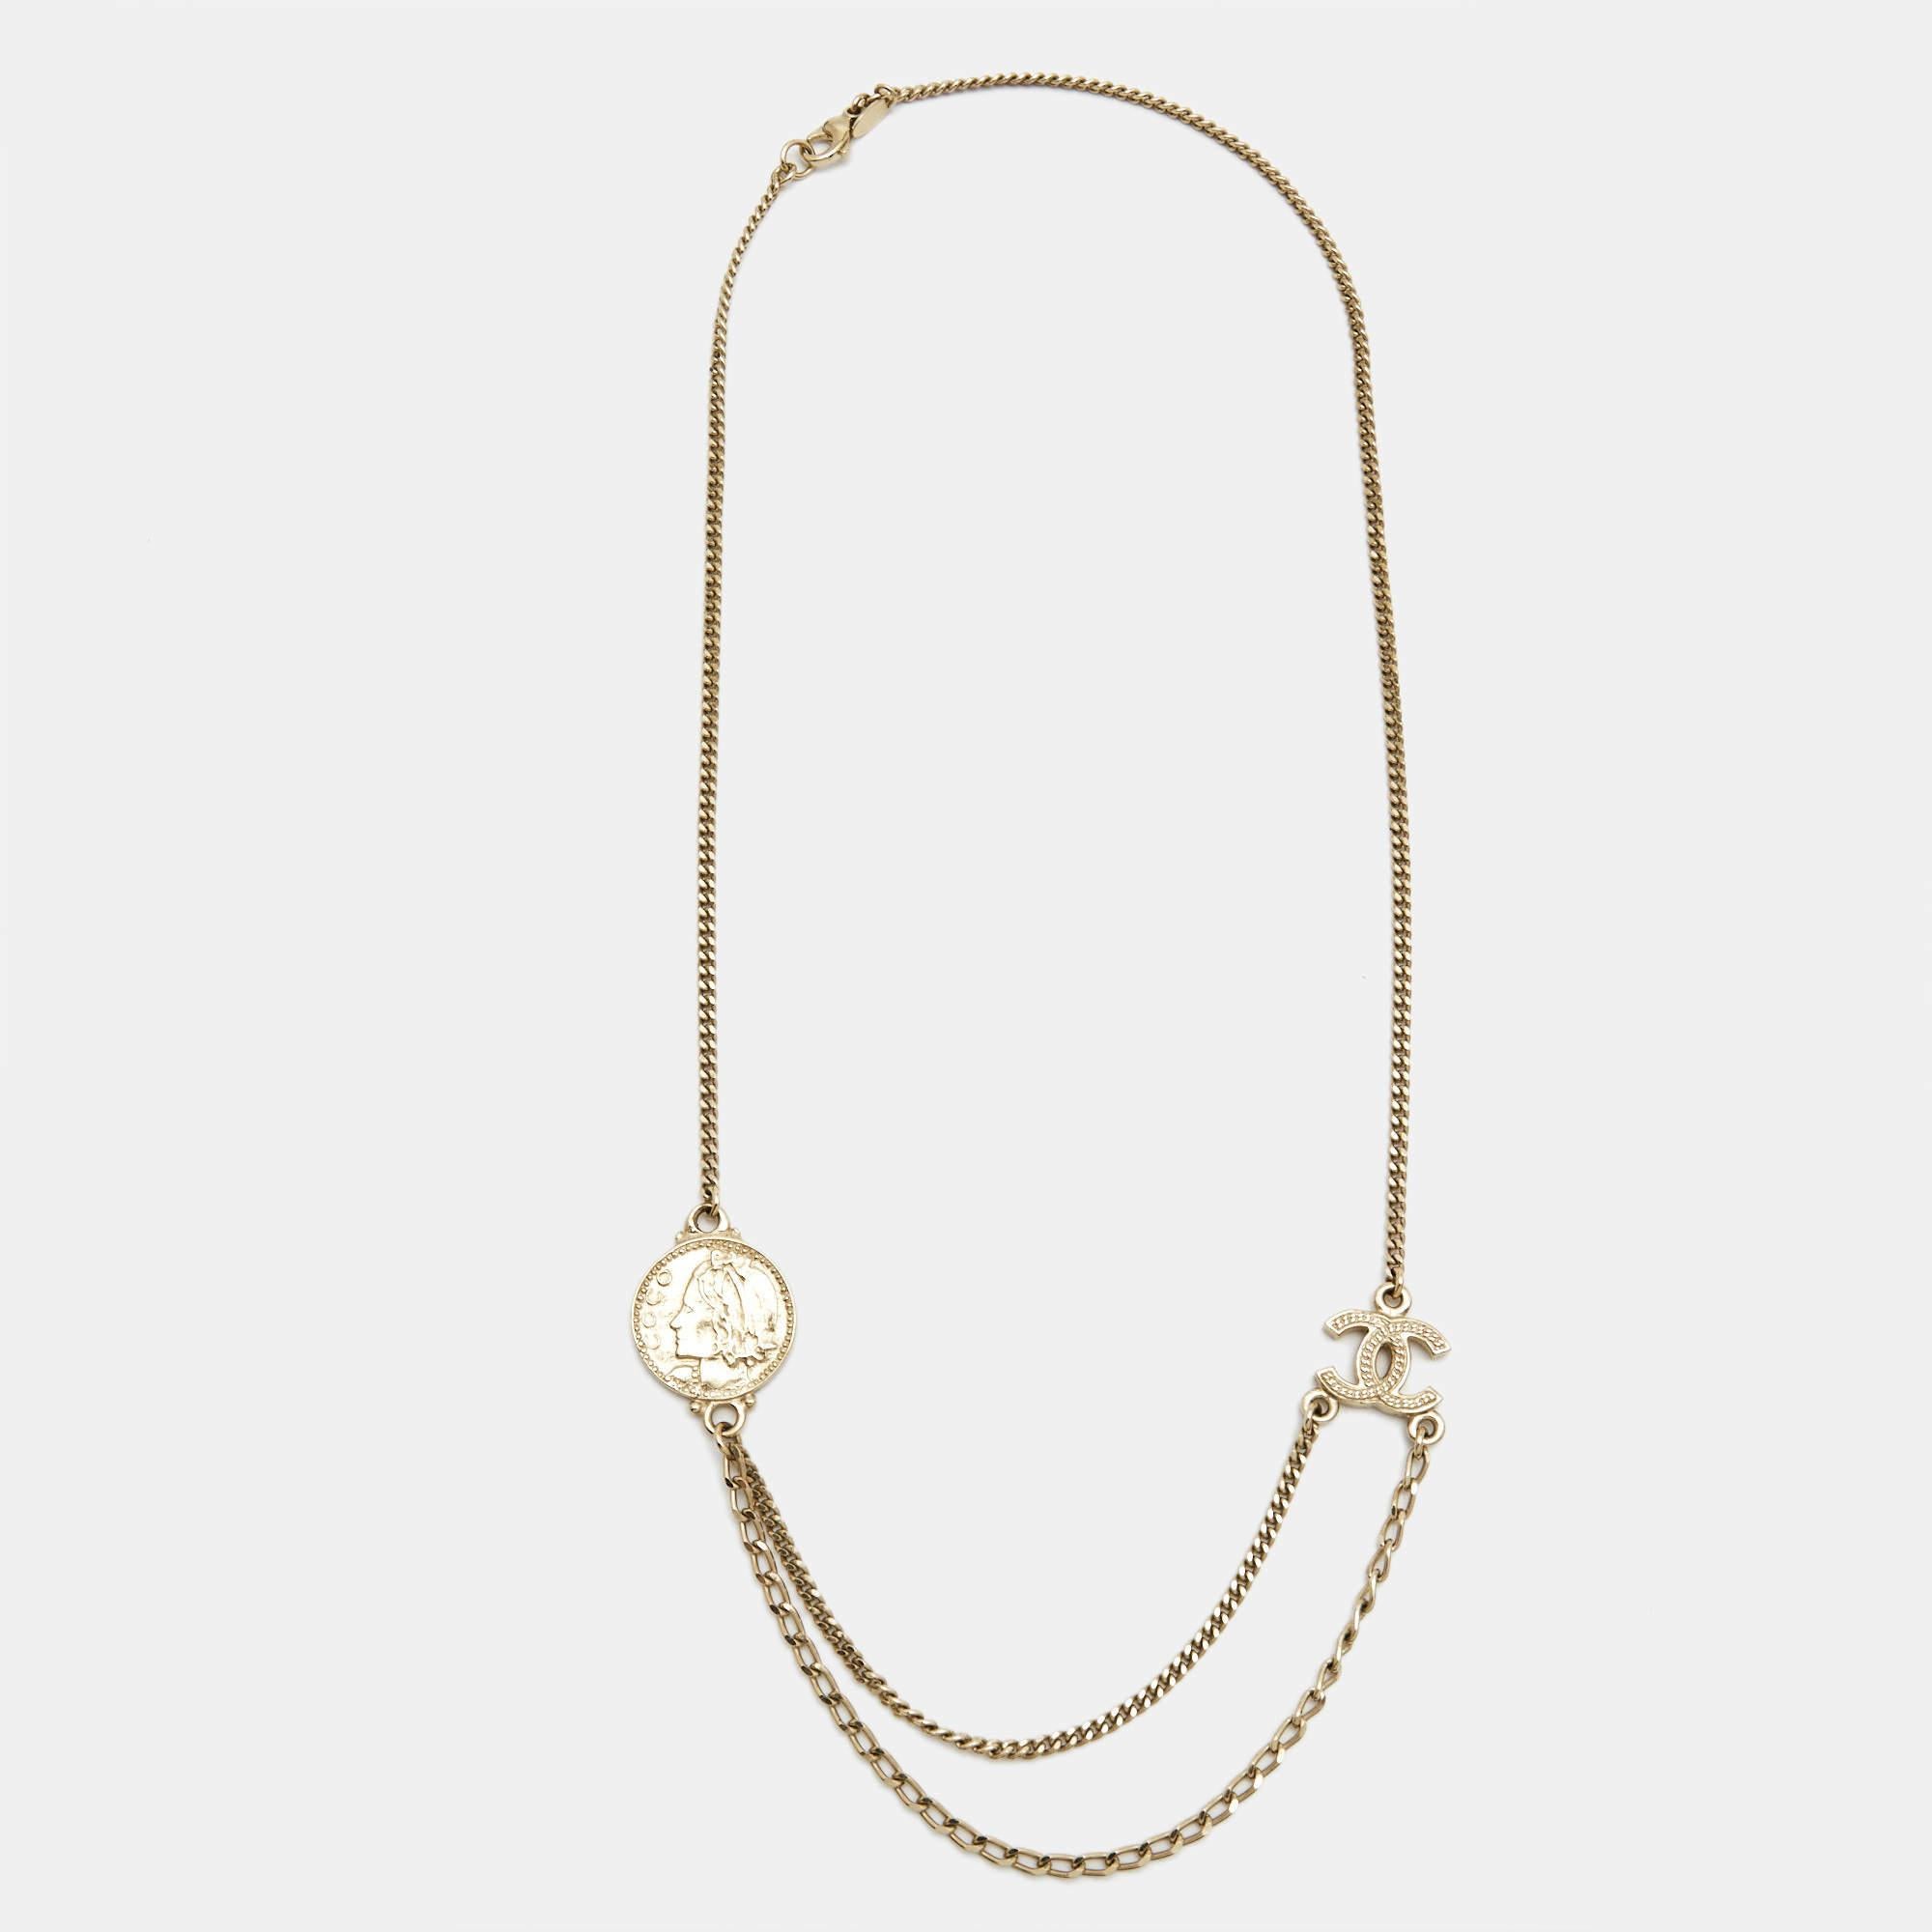 Das Chanel CC Coco Collier ist ein exquisites Schmuckstück. Sie besteht aus einer goldfarbenen Kette mit dem ikonischen Chanel-Logo, dem doppelten 